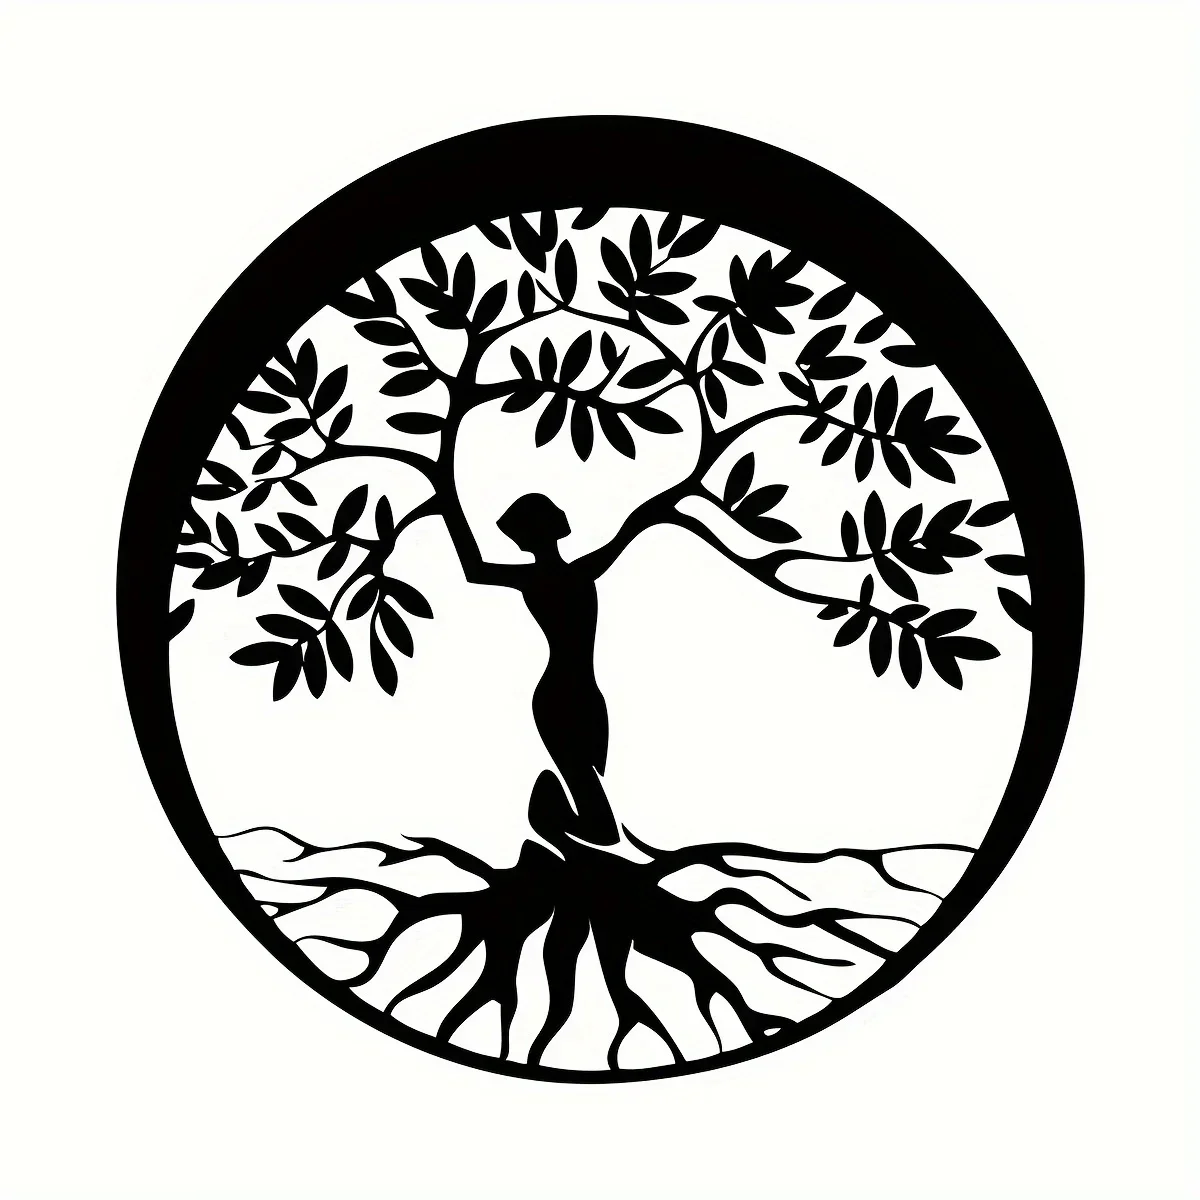 

Украшение CIFBUY, 1 шт., металлический женский знак на дерево, металлическое семейное настенное украшение для дома, детской комнаты, подарок на новоселье, для улицы